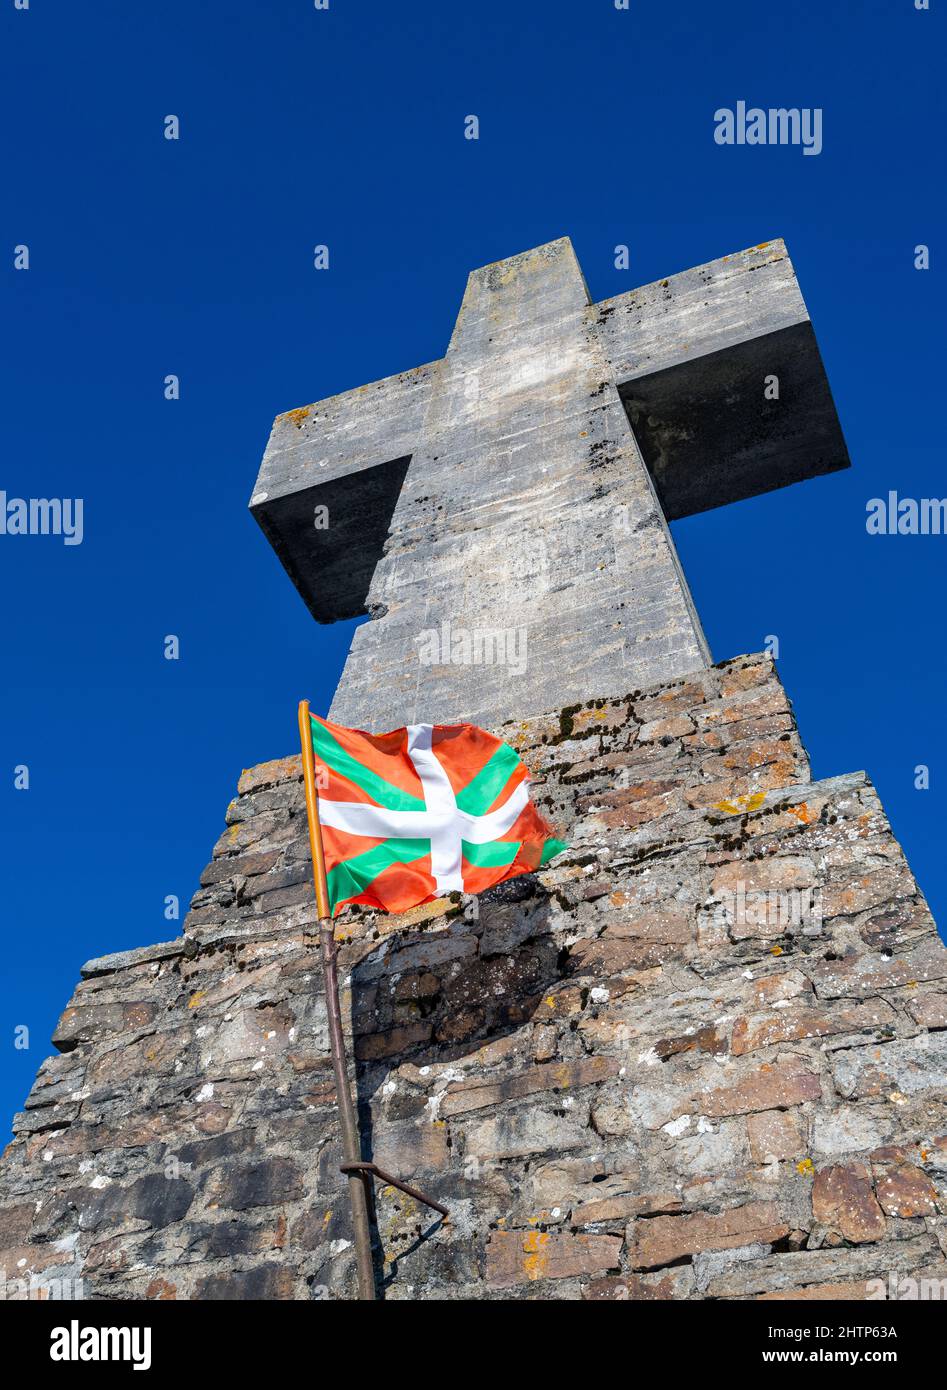 Bandiera dei Paesi Baschi che vola accanto a una grande croce di pietra nel Parco Naturale Urkiola nel nord dei Paesi Baschi, Spagna Foto Stock